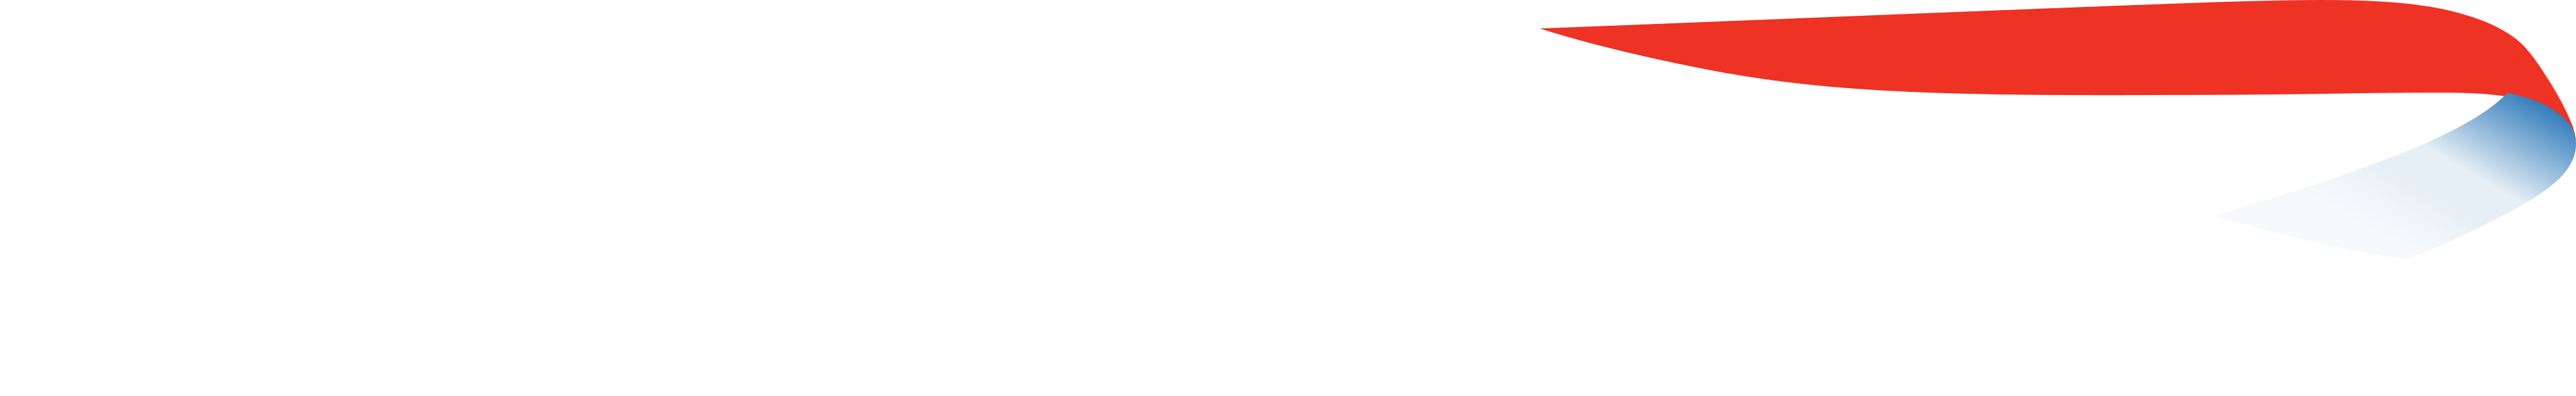 british airways logo 11 - British Airways Logo